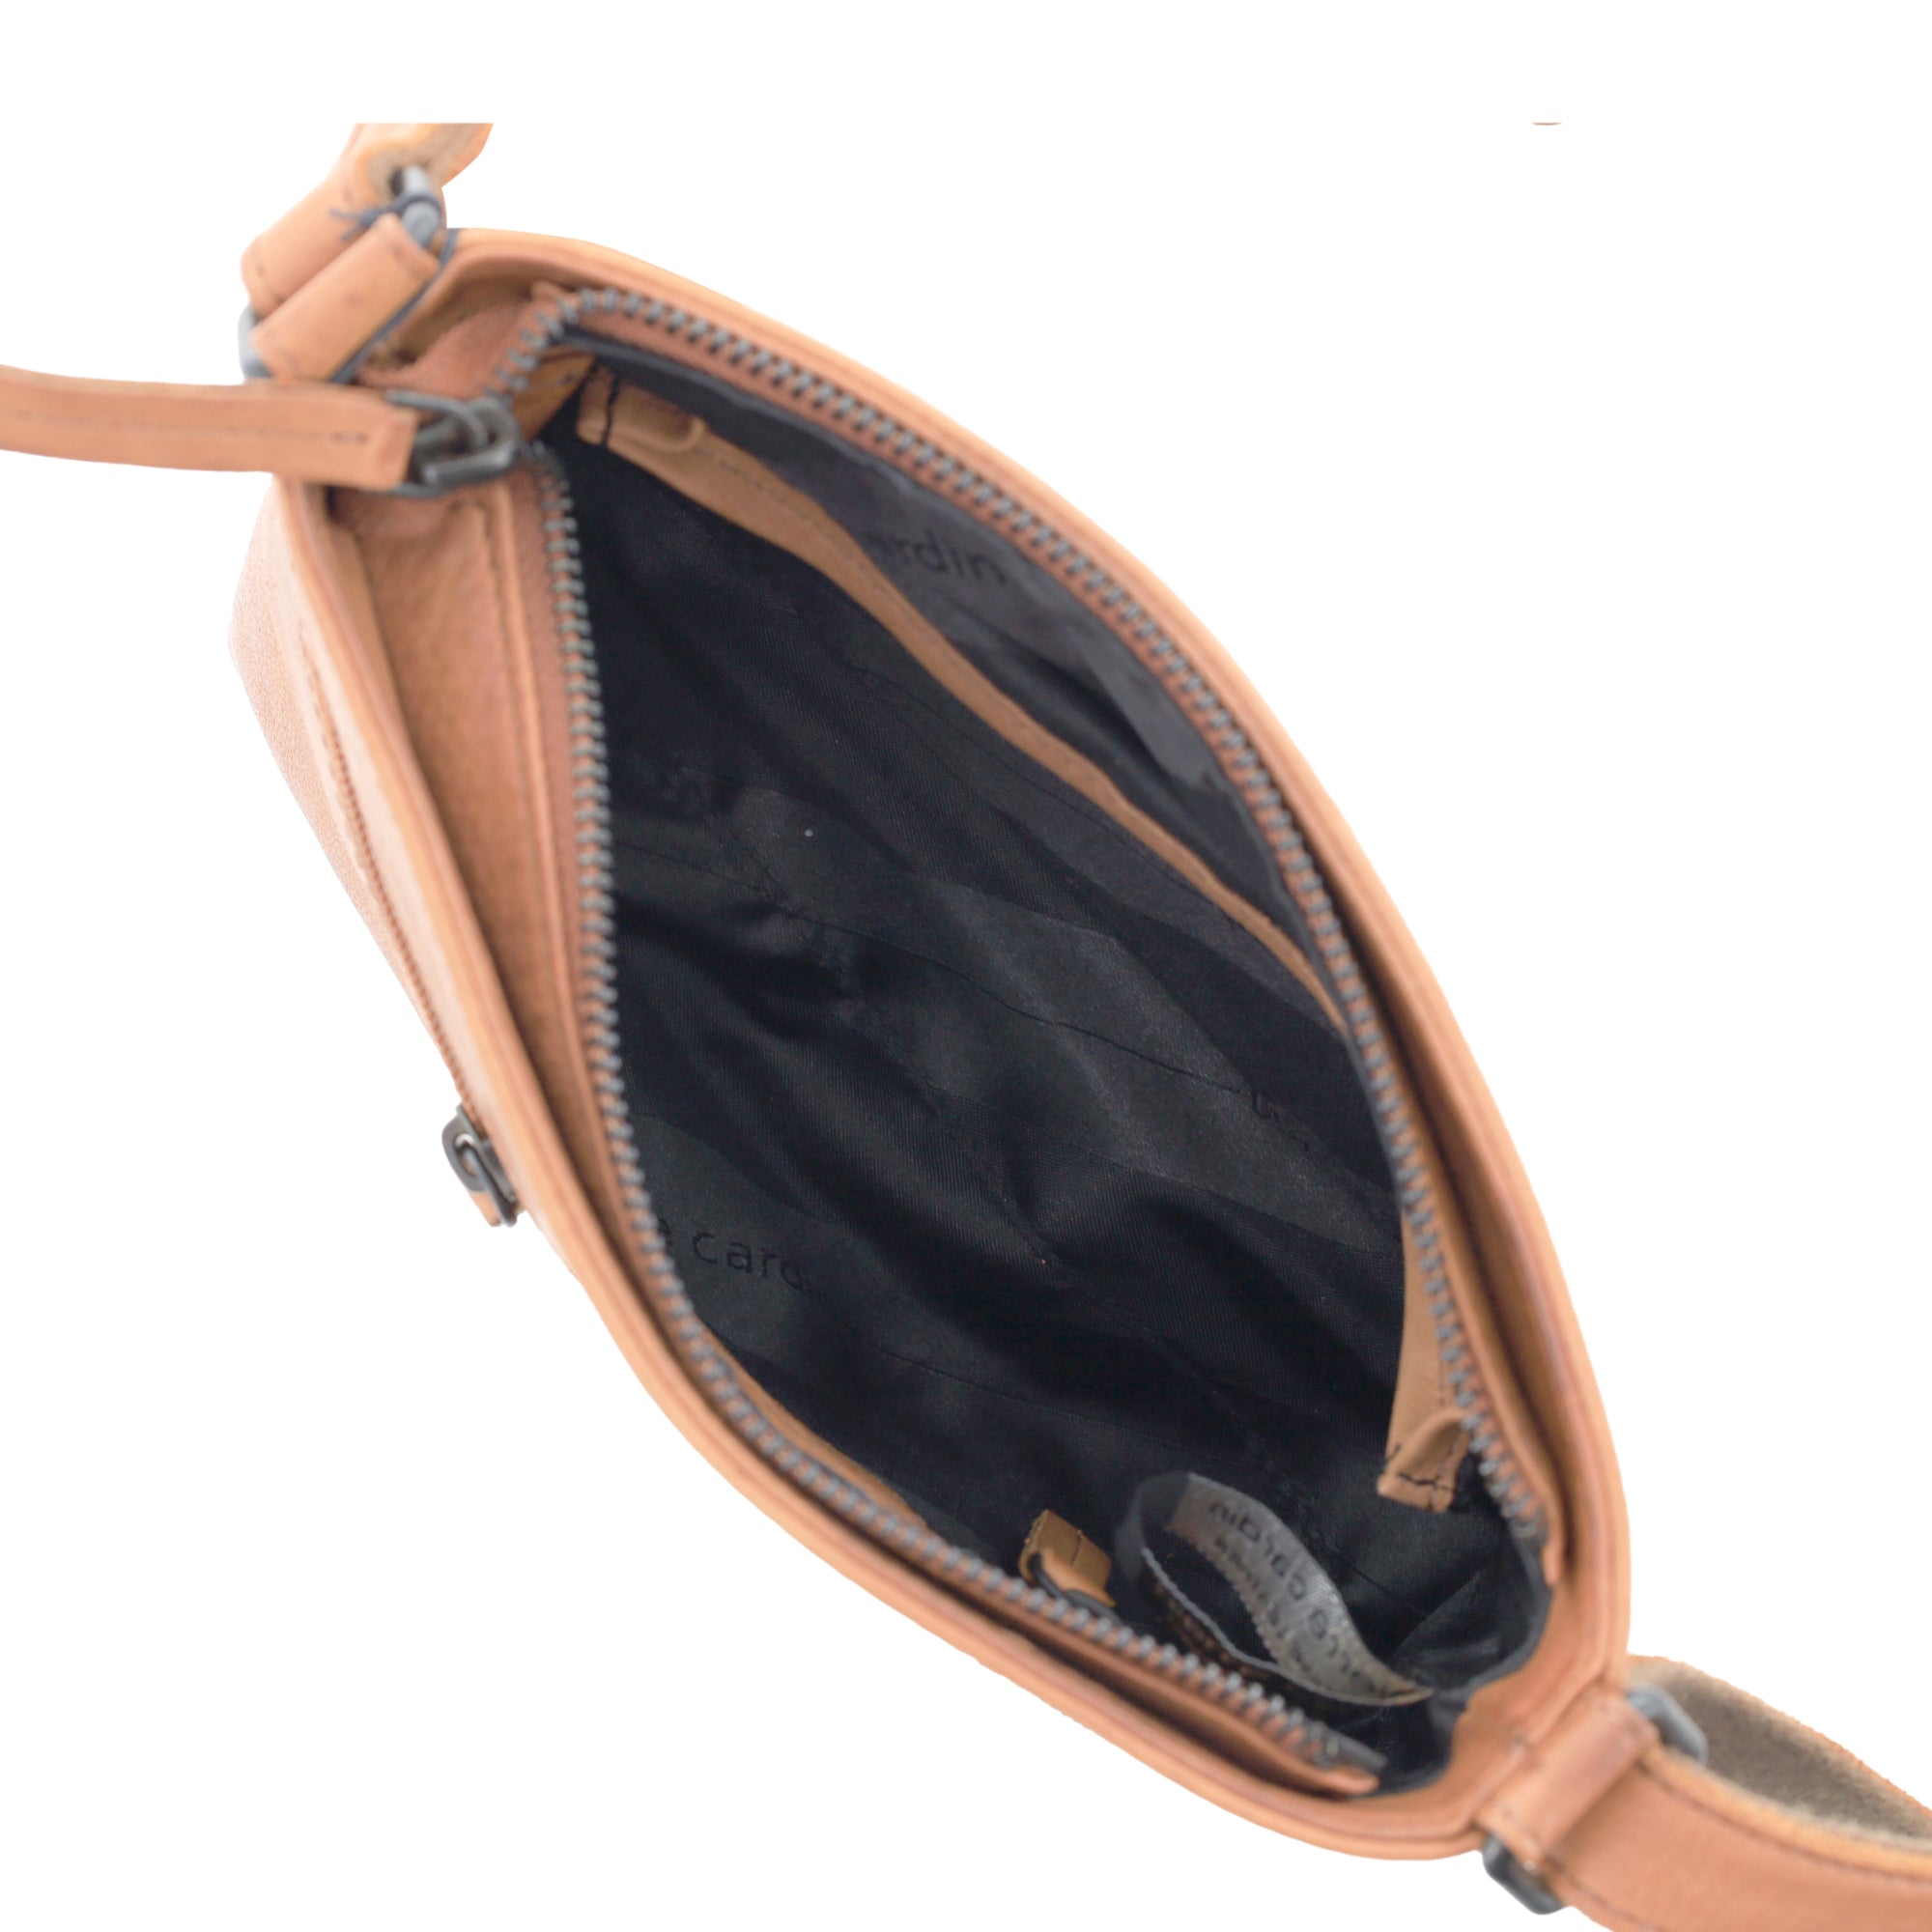 Pierre Cardin Leather Woven Embossed Cross-Body Bag in Black